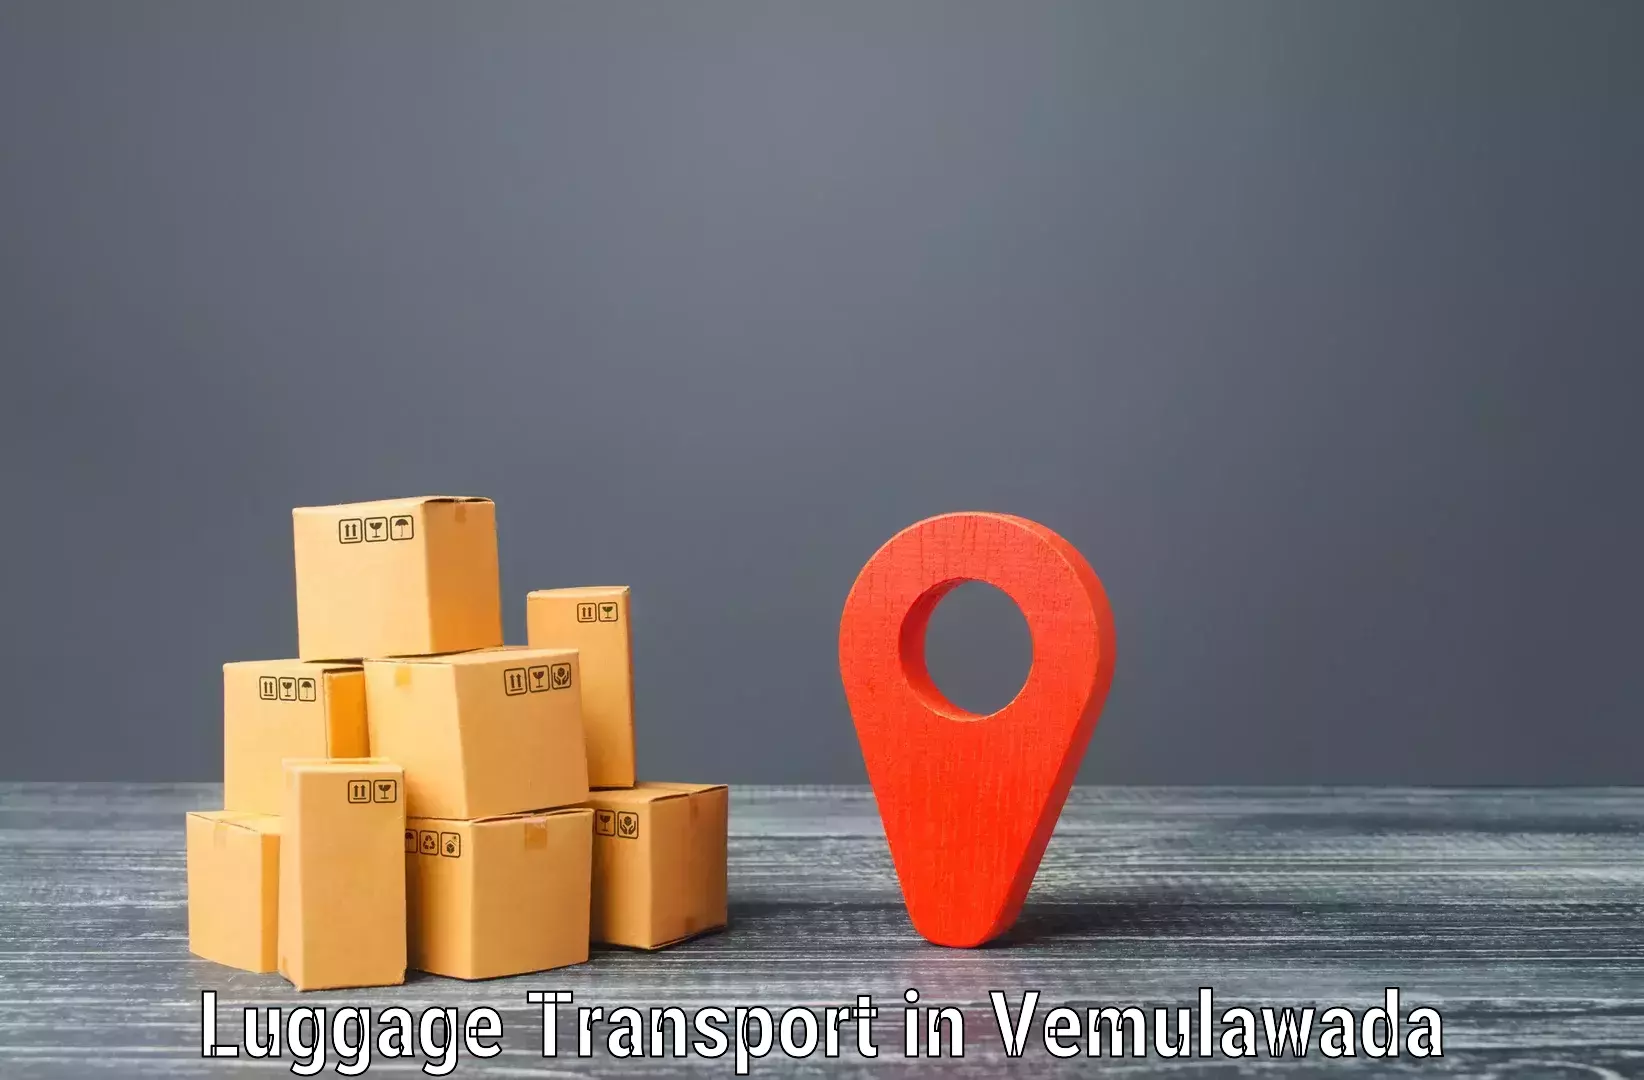 Baggage transport estimate in Vemulawada